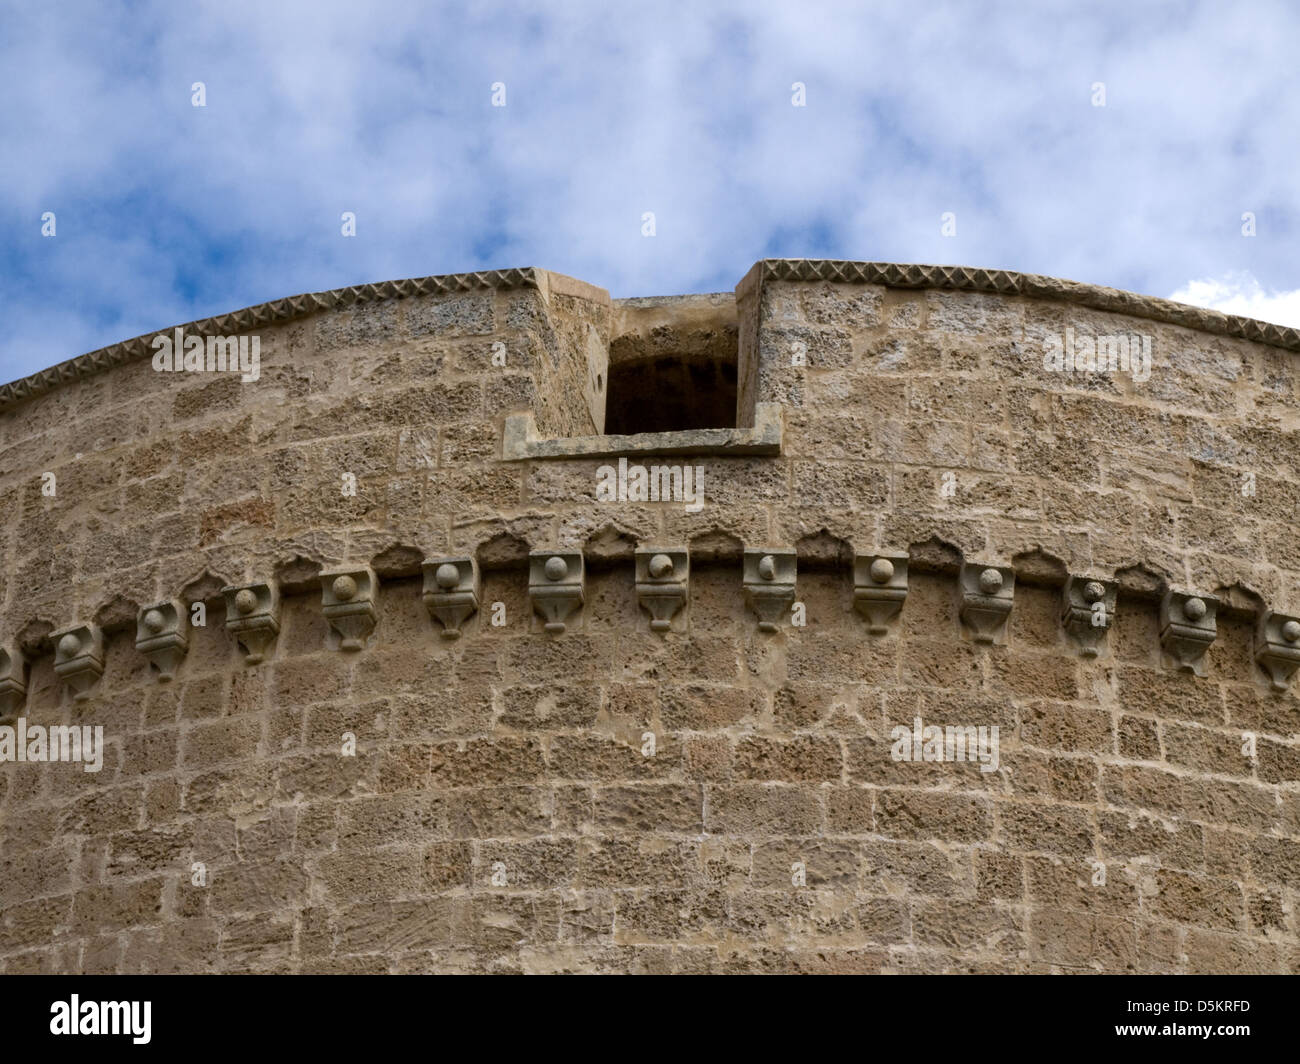 Corigliano d'Otranto  LE - castle - Castello de' Monti - detail Stock Photo